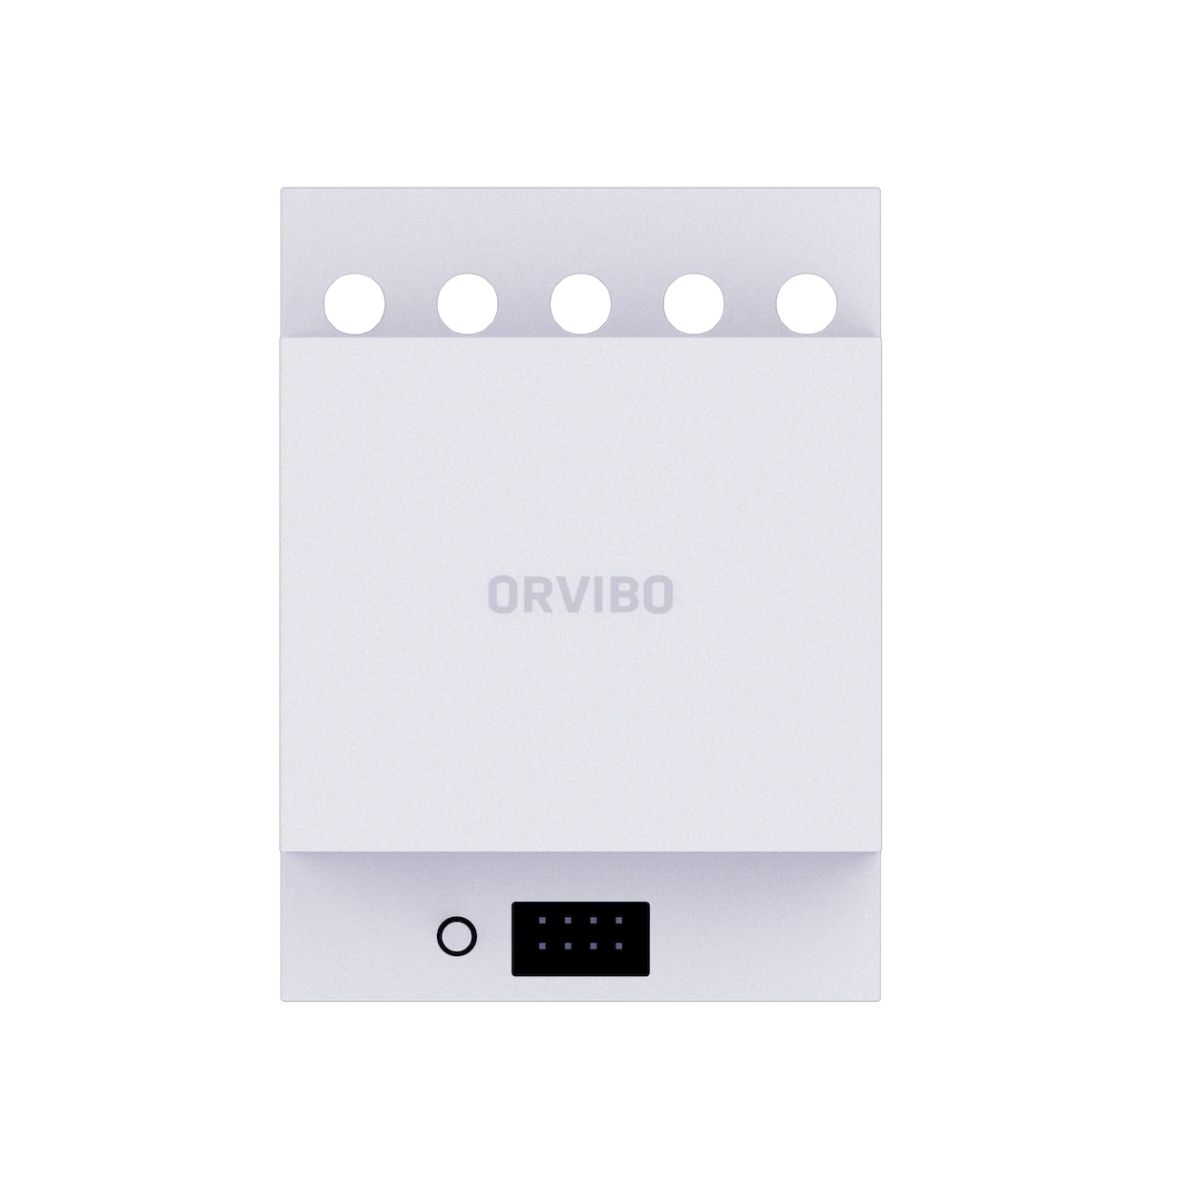 Công tắc điện âm tường thông minh điều khiển 3 thiết bị Orvibo R30W3Z giao thức Zigbee HA, tần số 2.4GHz